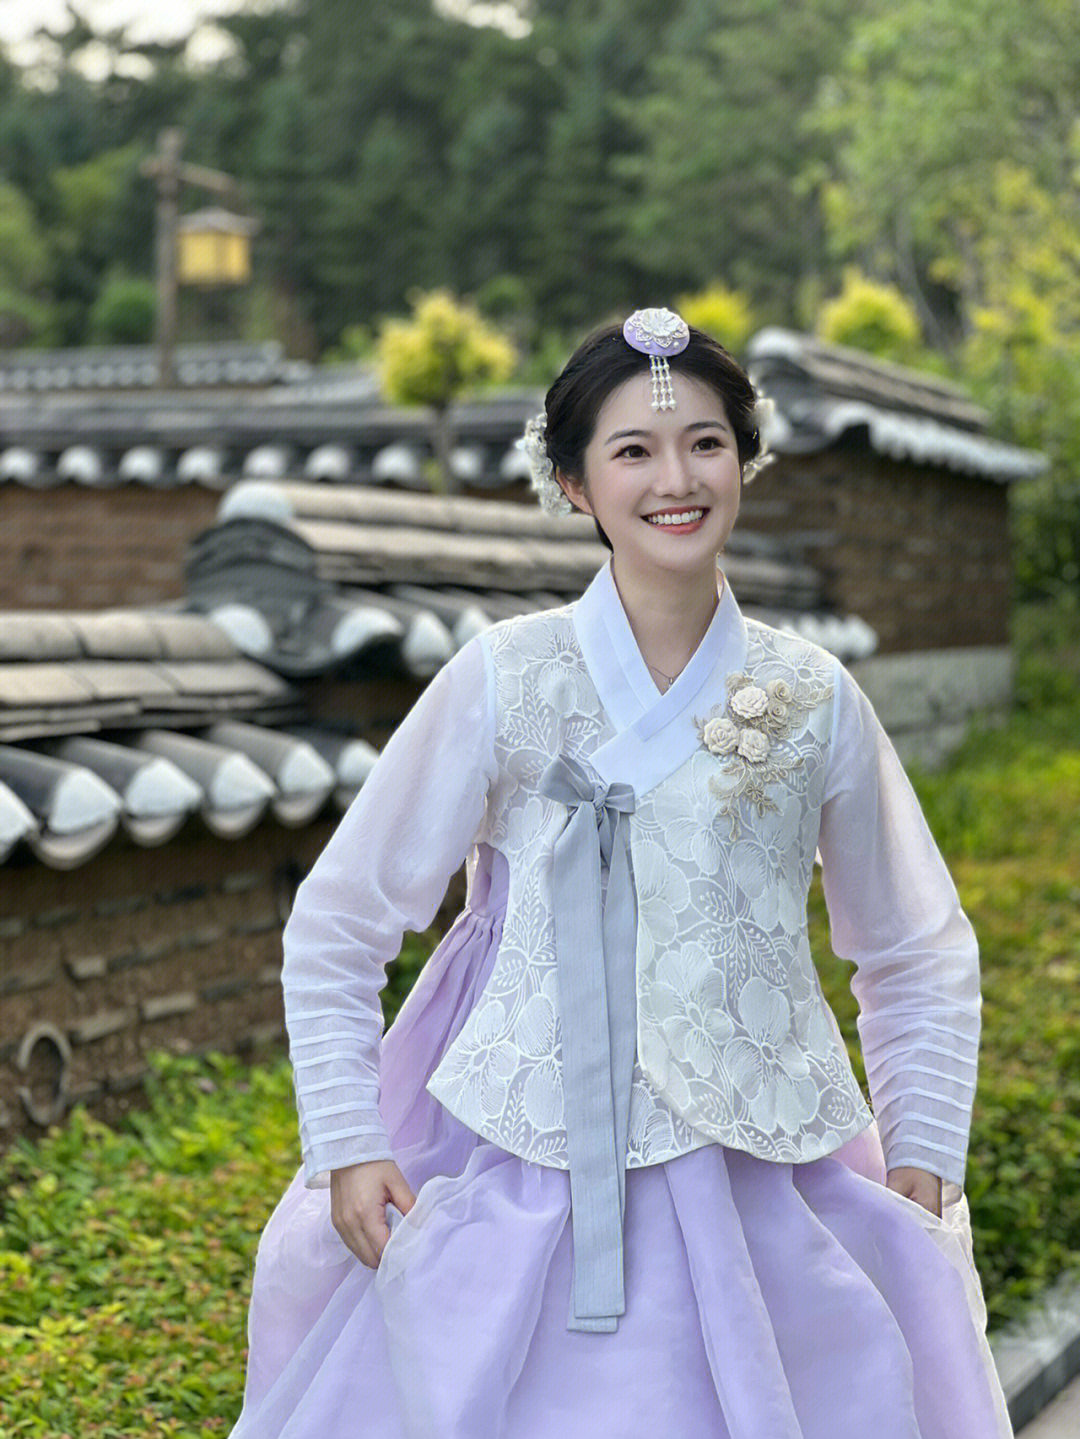 叫一声朝鲜族公主不过分吧延吉拍照